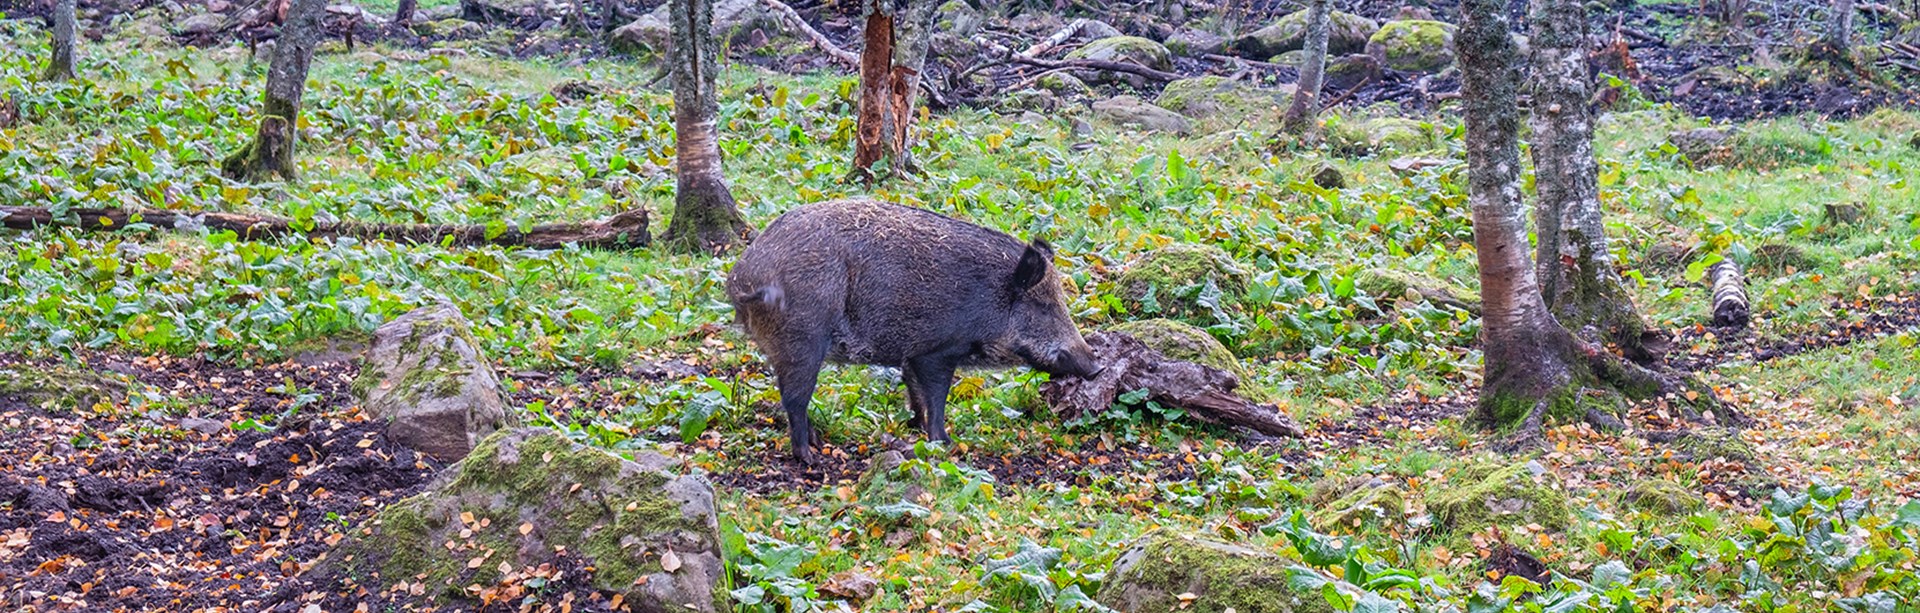 Att krocka med ett vildsvin kan orsaka större skador än man kanske förväntar sig. Foto: M Sverige.